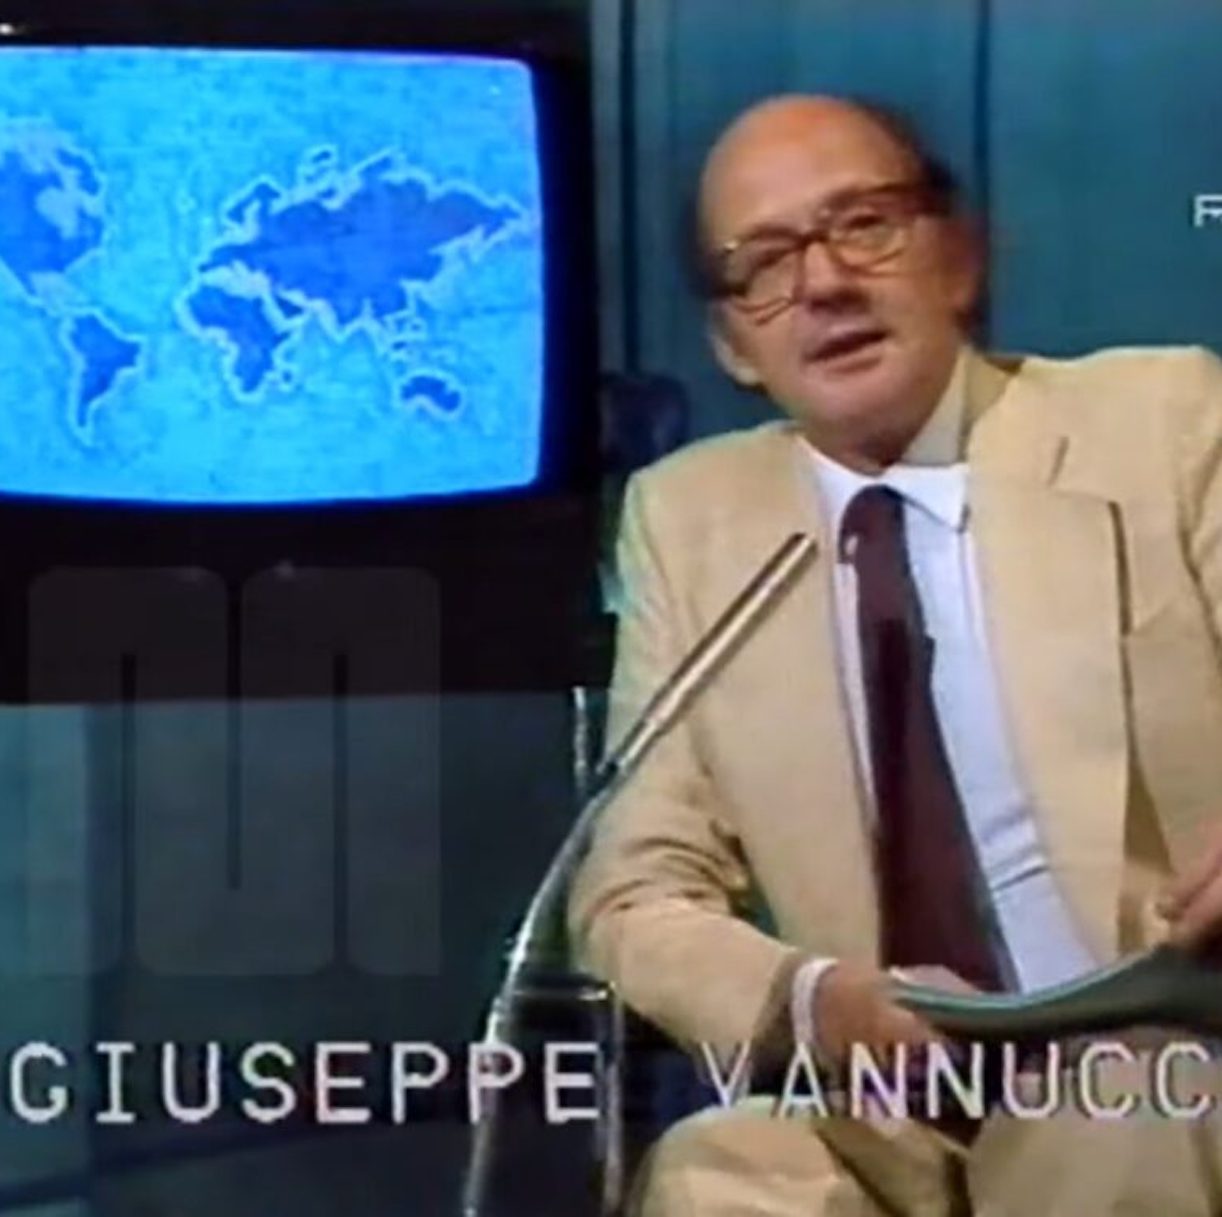  È morto il famoso giornalista Giuseppe Vannucchi